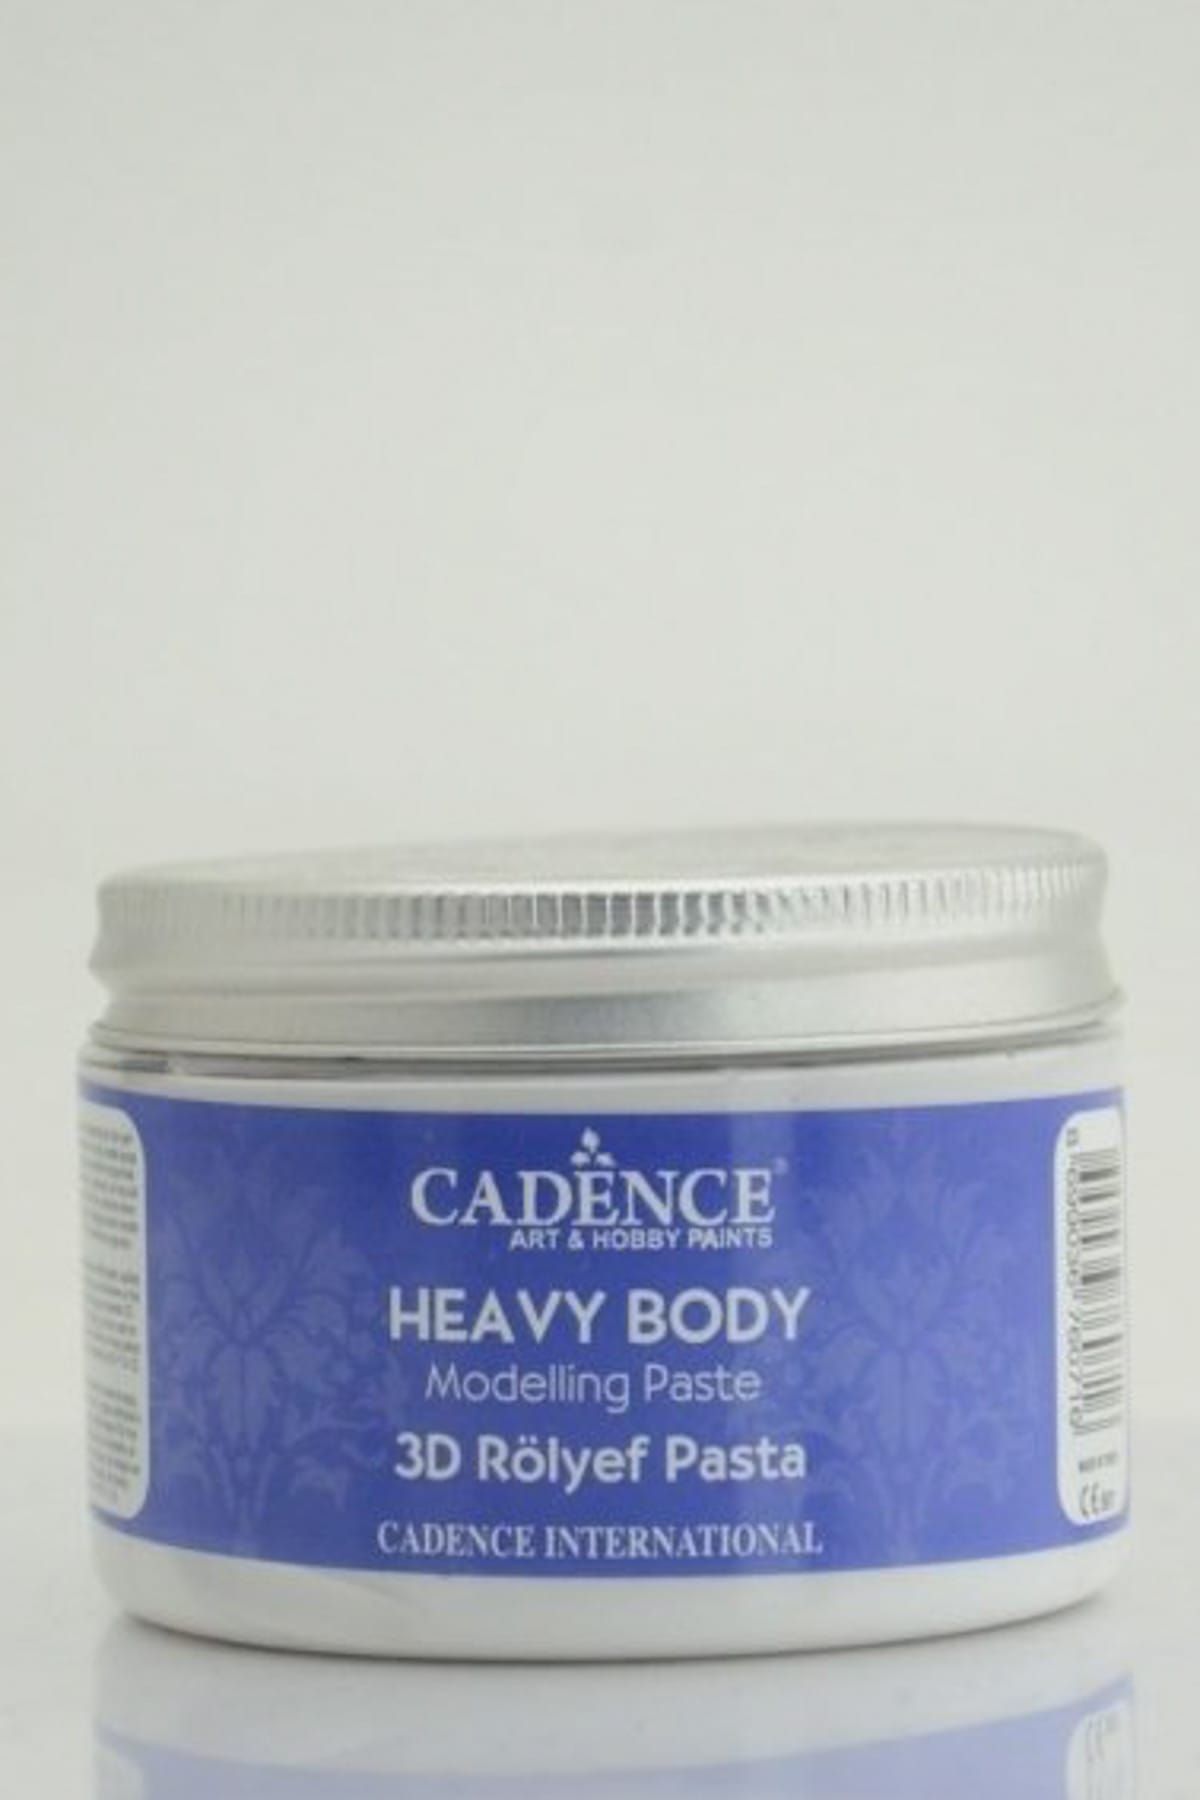 Cadence Heavy Body Modelling Paste - 3D Rölyef Pasta 150ml